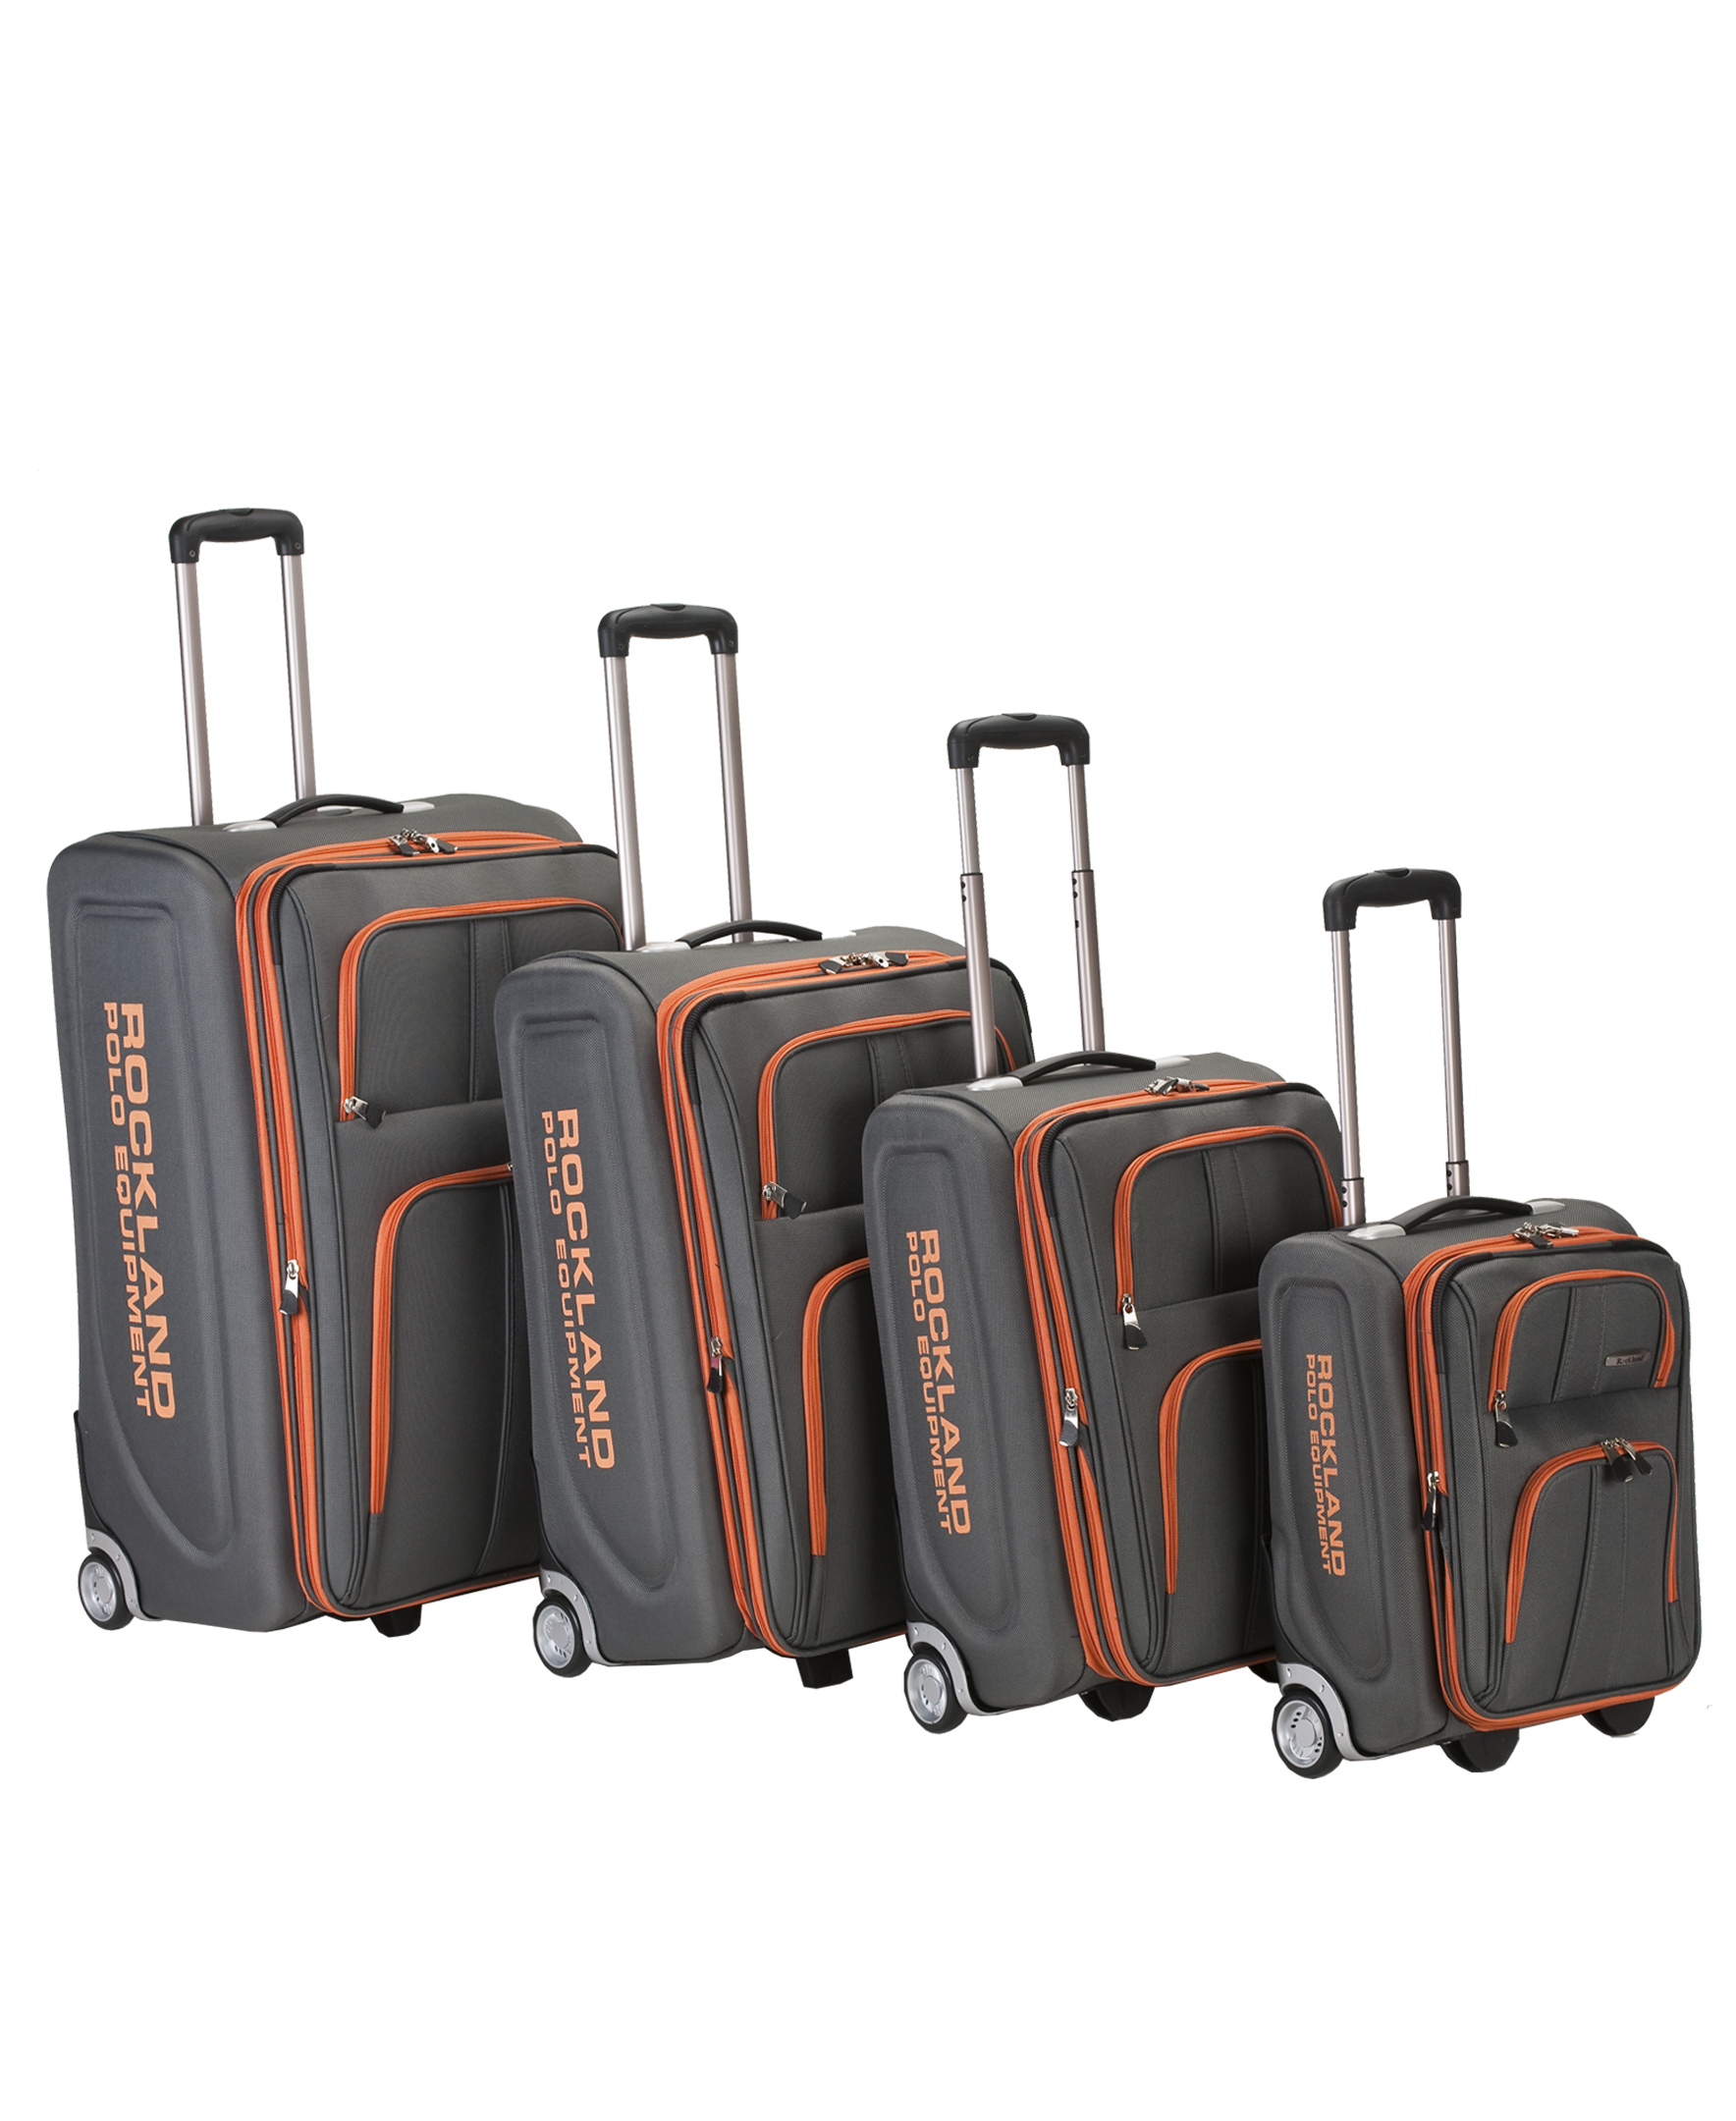 Rockland Luggage Varsity 4-Piece Softside Expandable Luggage Set F120 - image 1 of 6